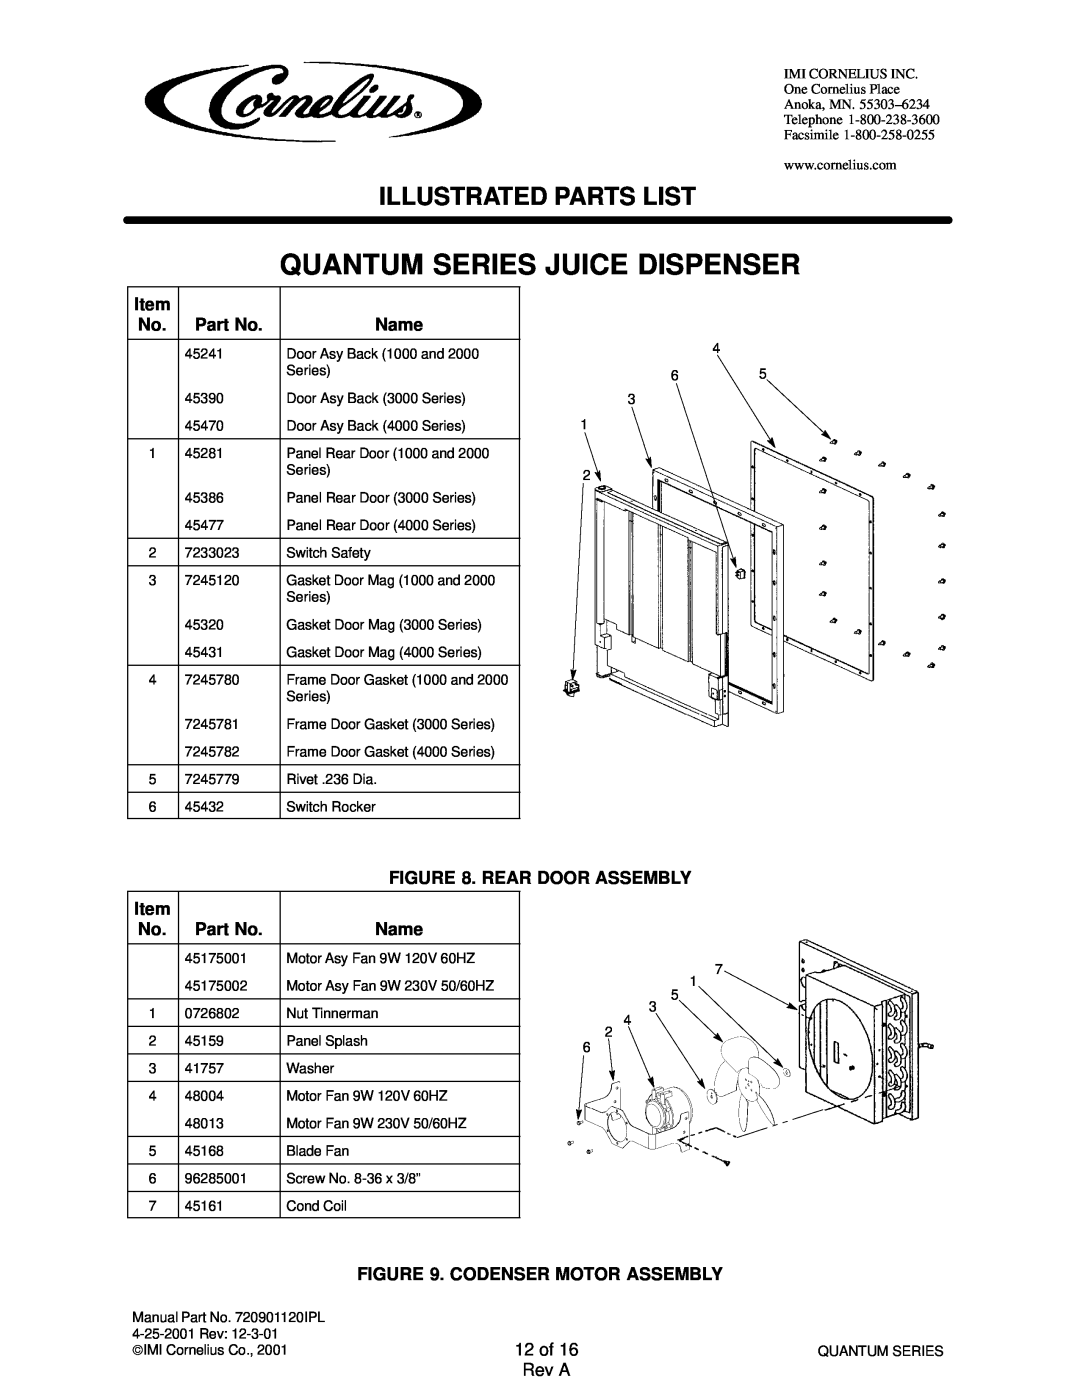 Cornelius QUANTUM SERIES service manual Quantum Series Juice Dispenser, Illustrated Parts List, 12 of 16 Rev A 